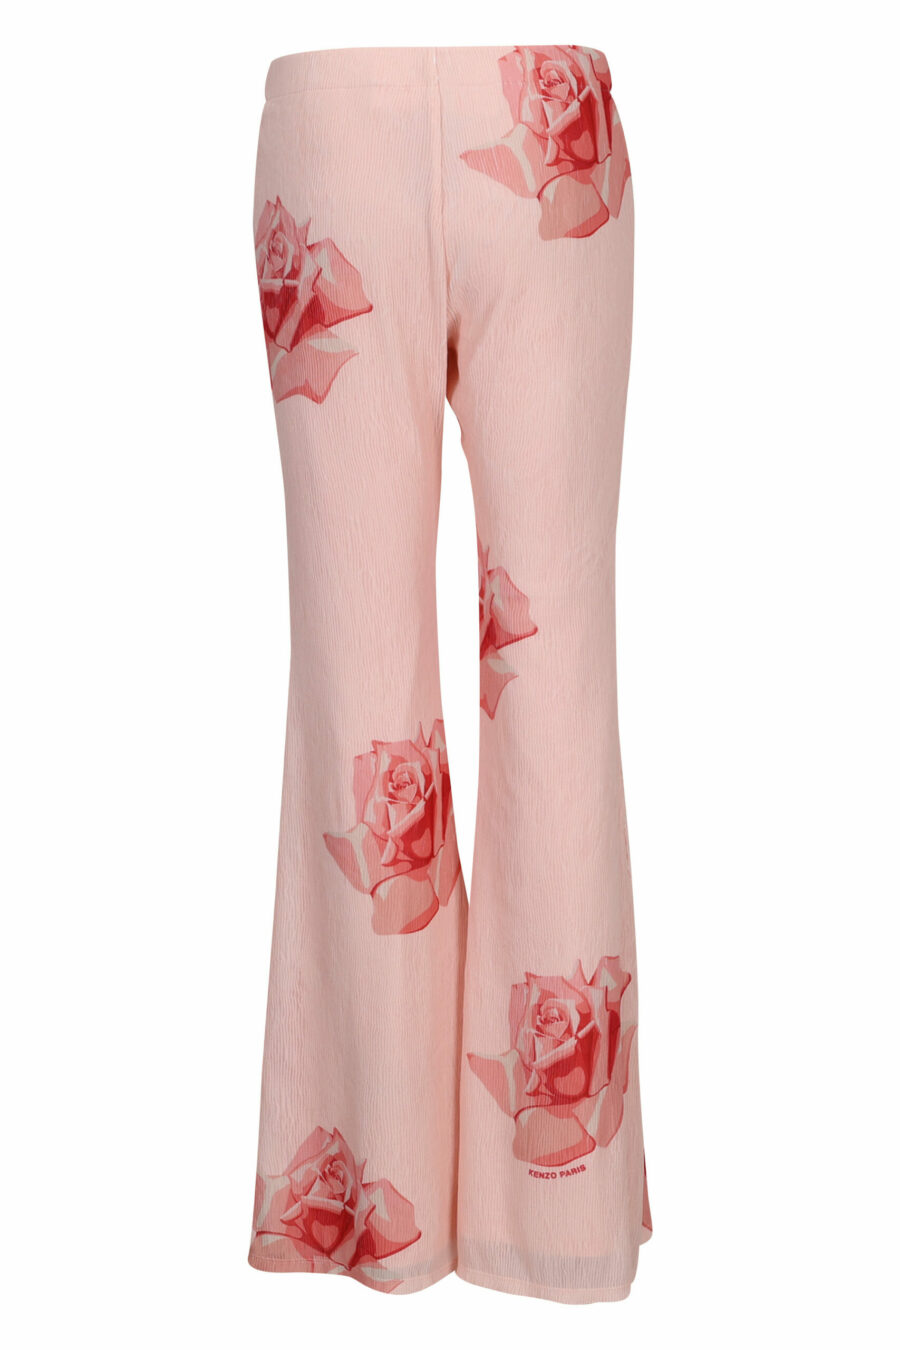 Pantalón rosa con estampado "kenzo rose" - 3612230630246 1 scaled